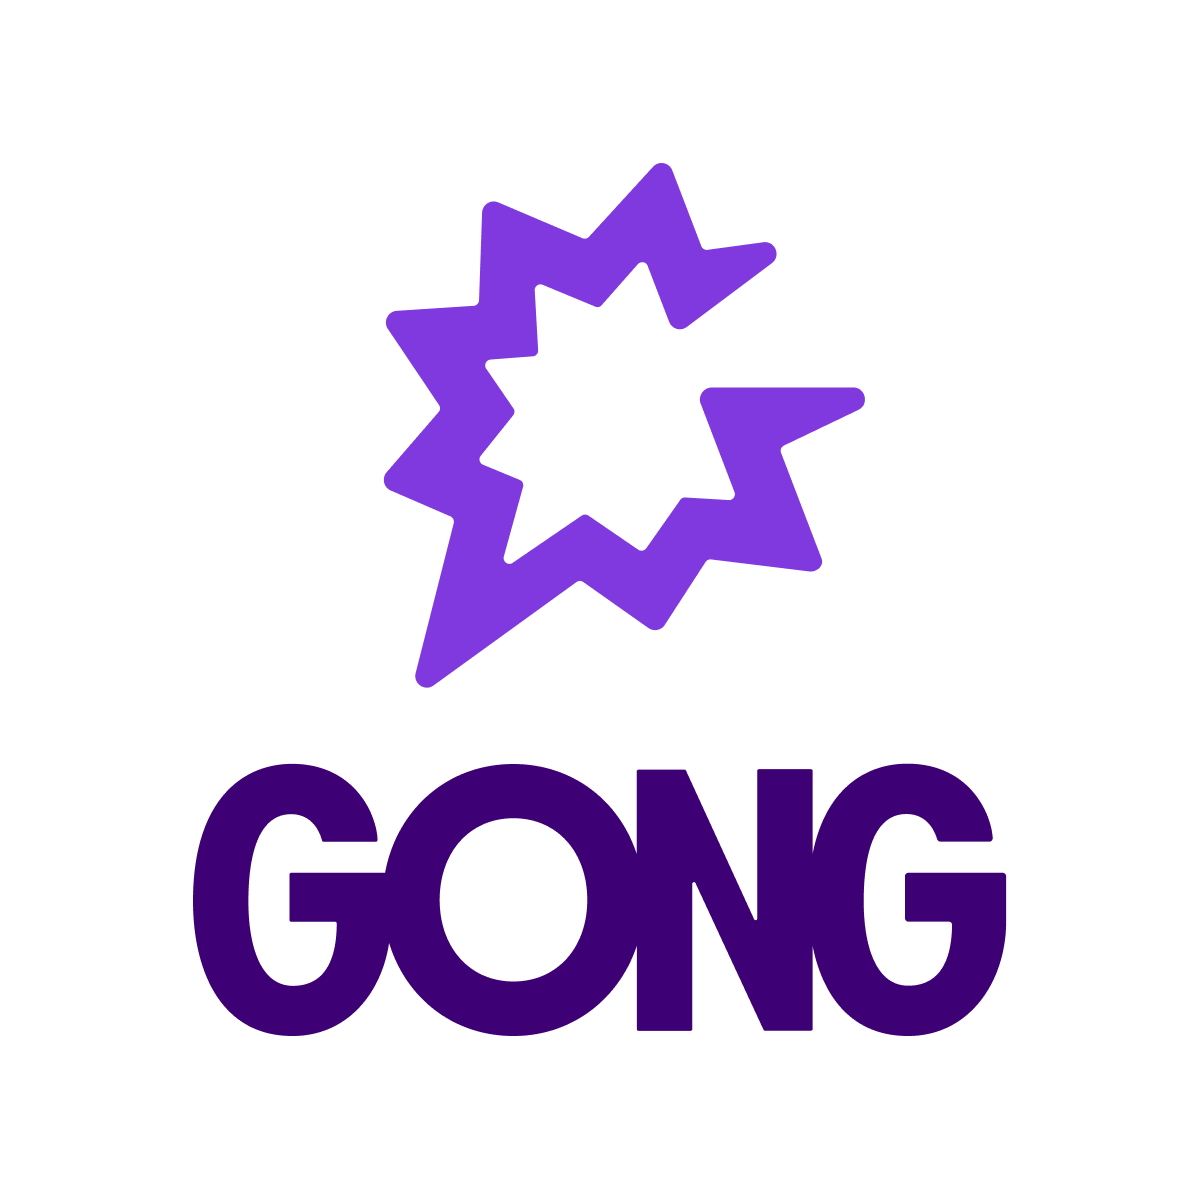 Logo Gong